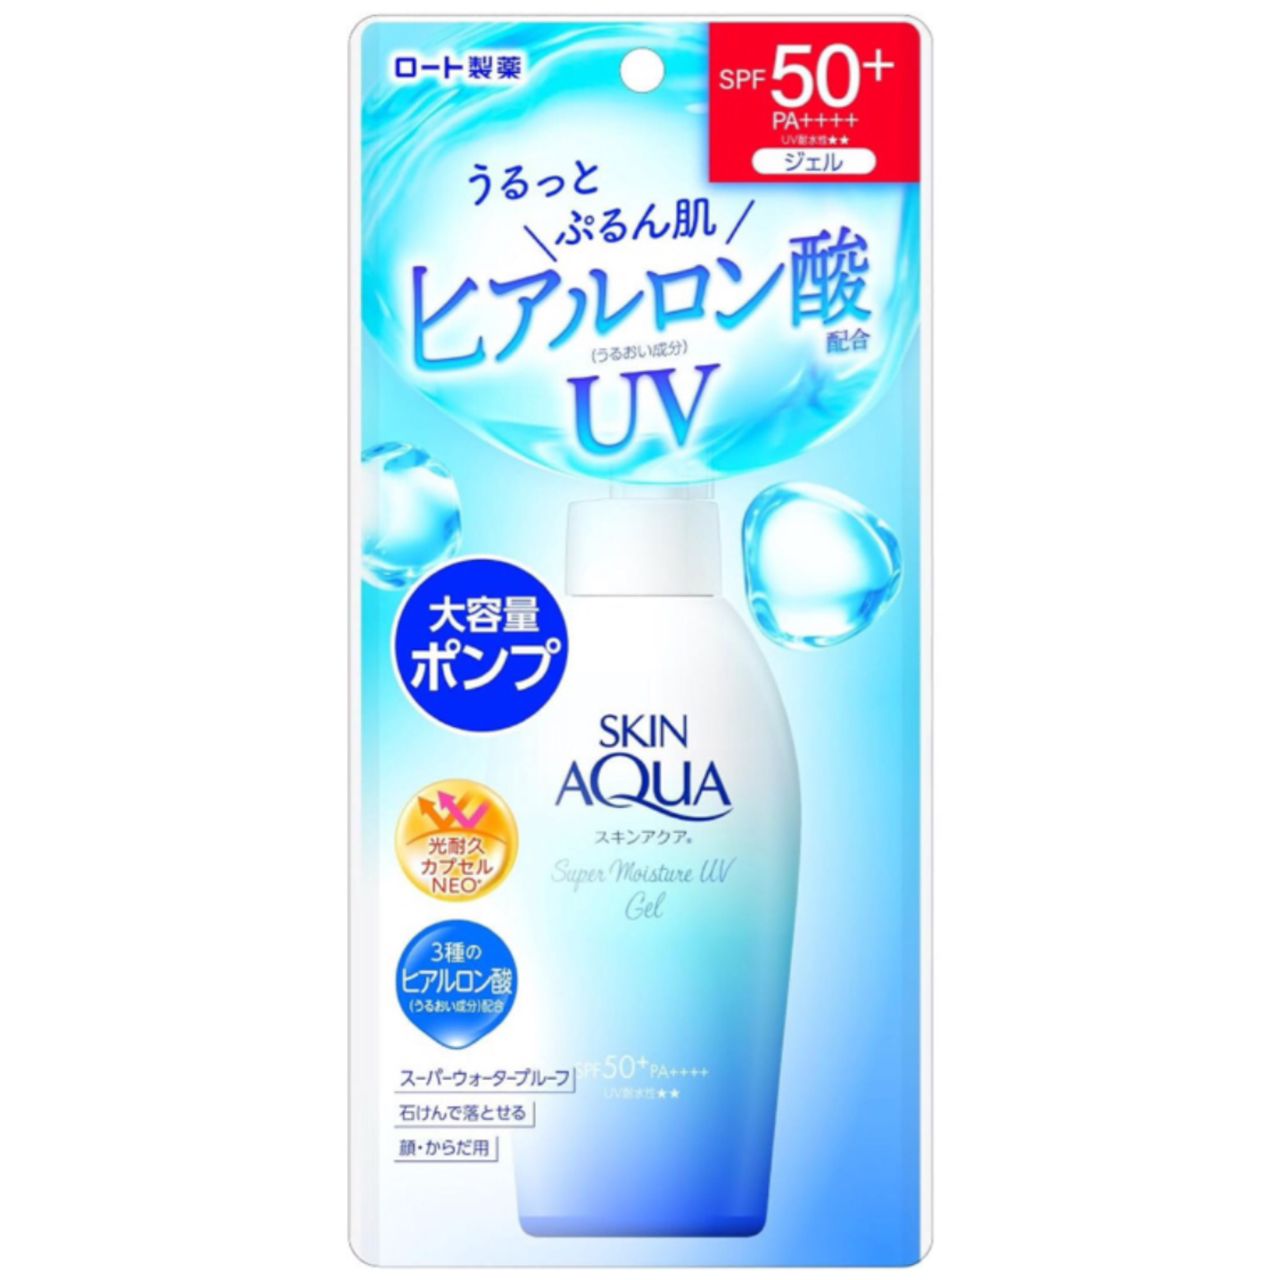 Skin Aqua SUPER MOISTURE UV GEL SPF 50+ 140g